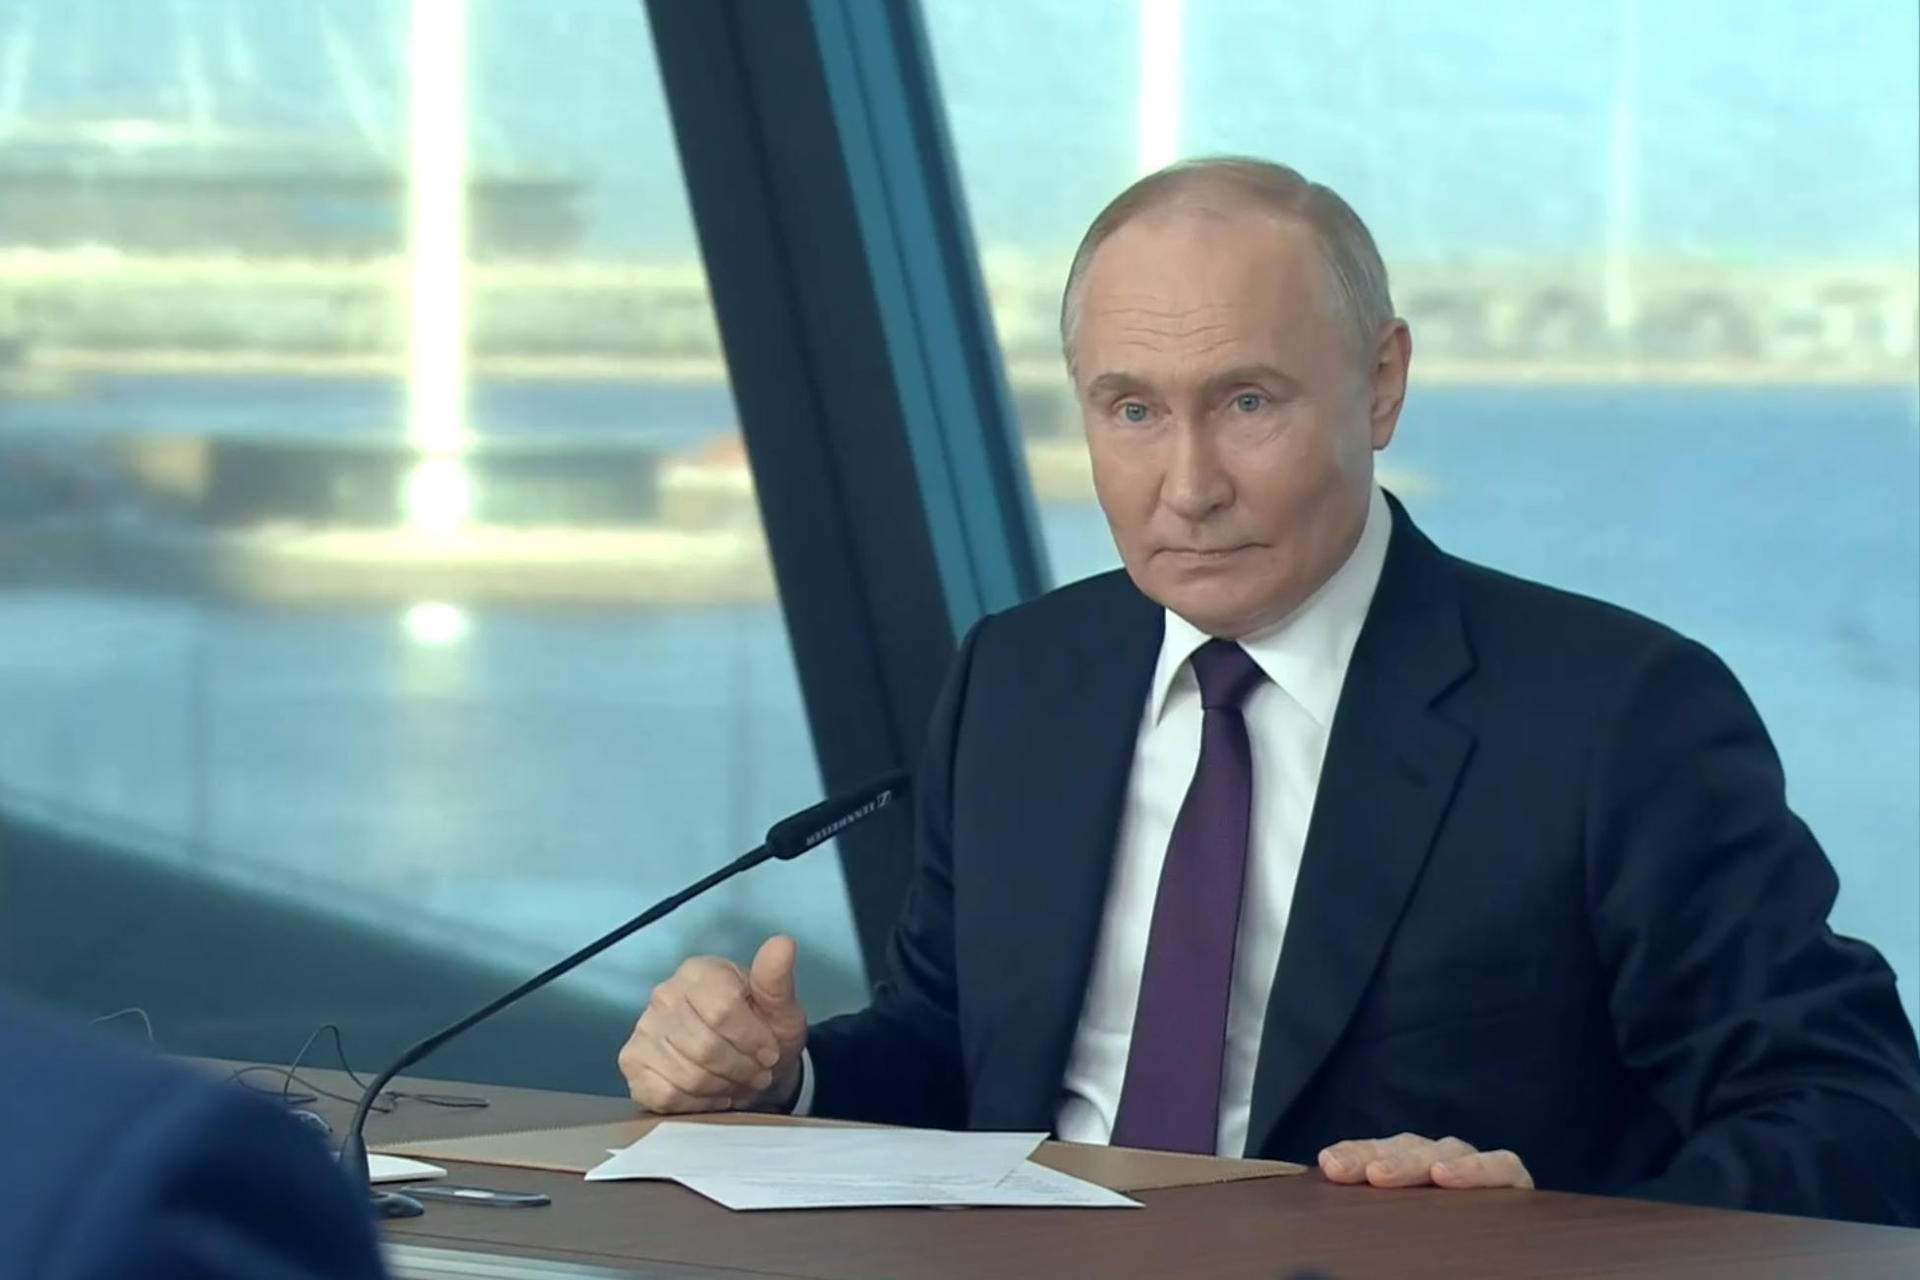 Vladímir Putin sale en defensa de Donald Trump: “Es evidente la persecución judicial”